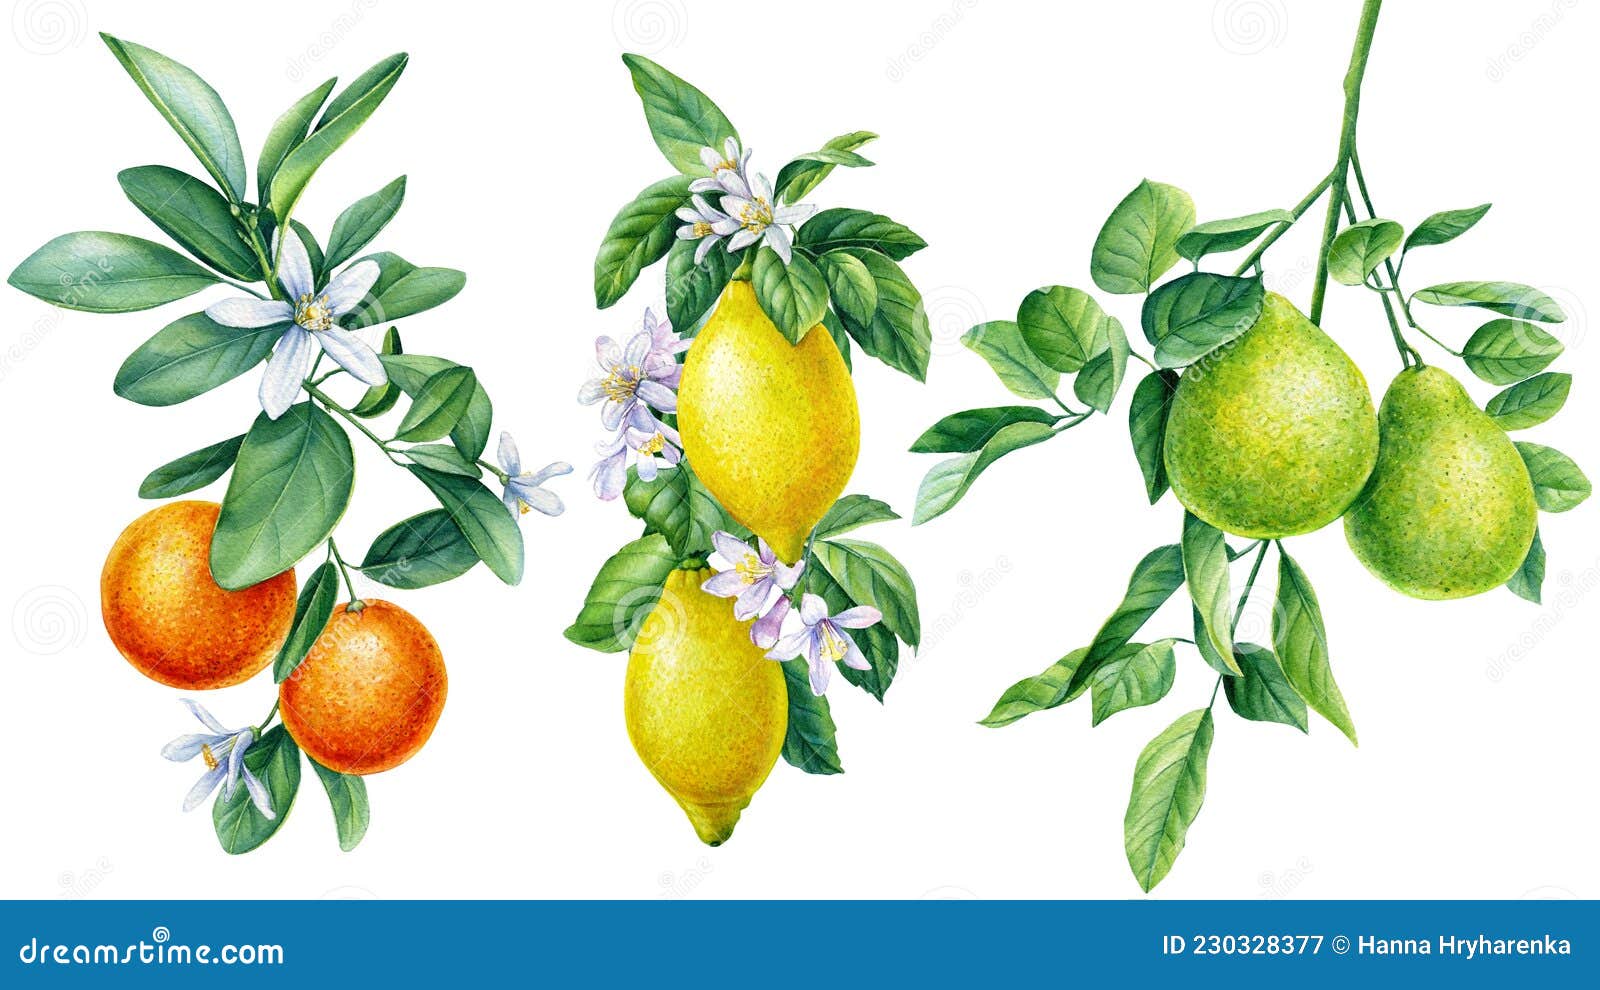 Ramificación Con Flores. Tangerines Lemon Bergamot. Diseño De Flora De ...